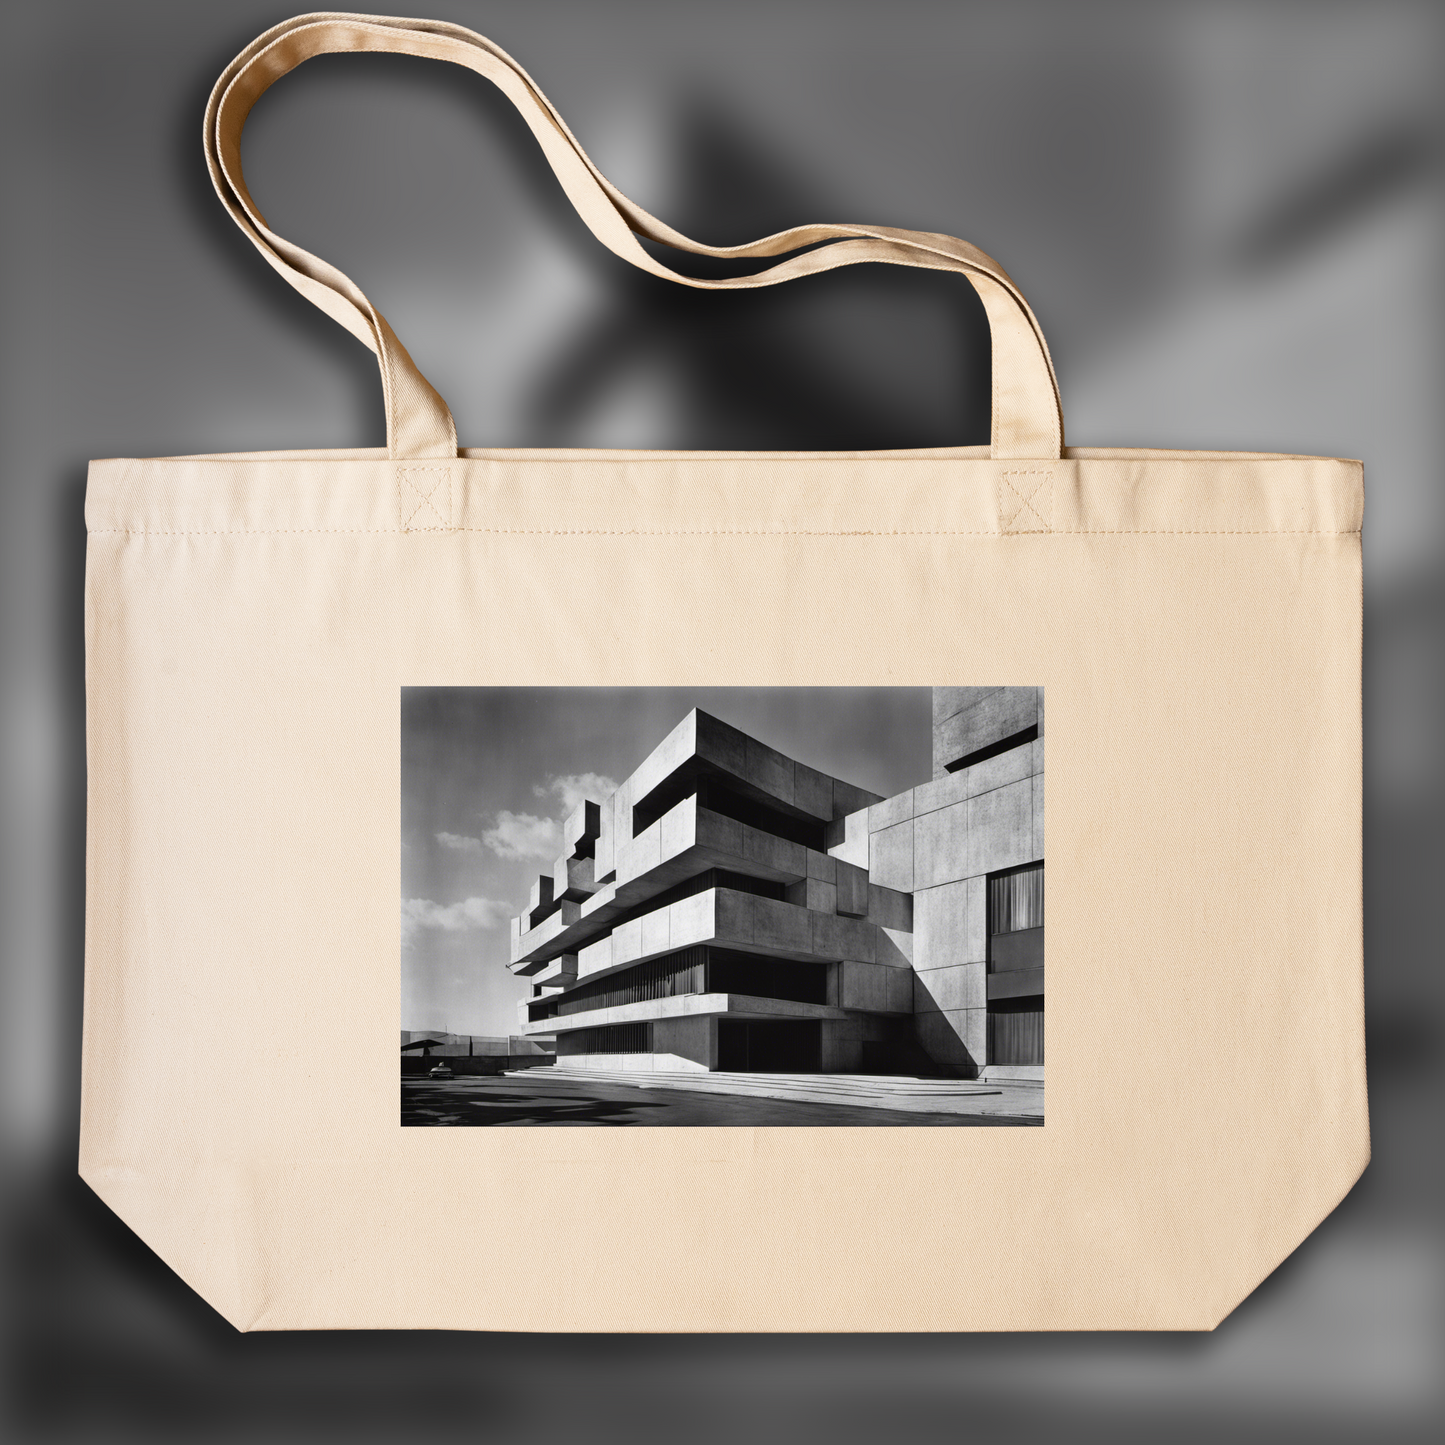 Tote bag ample - Photographies abstraites basées sur des éléments de la nature et des motifs géométriques , Brutalist architecture, city - 3228425031